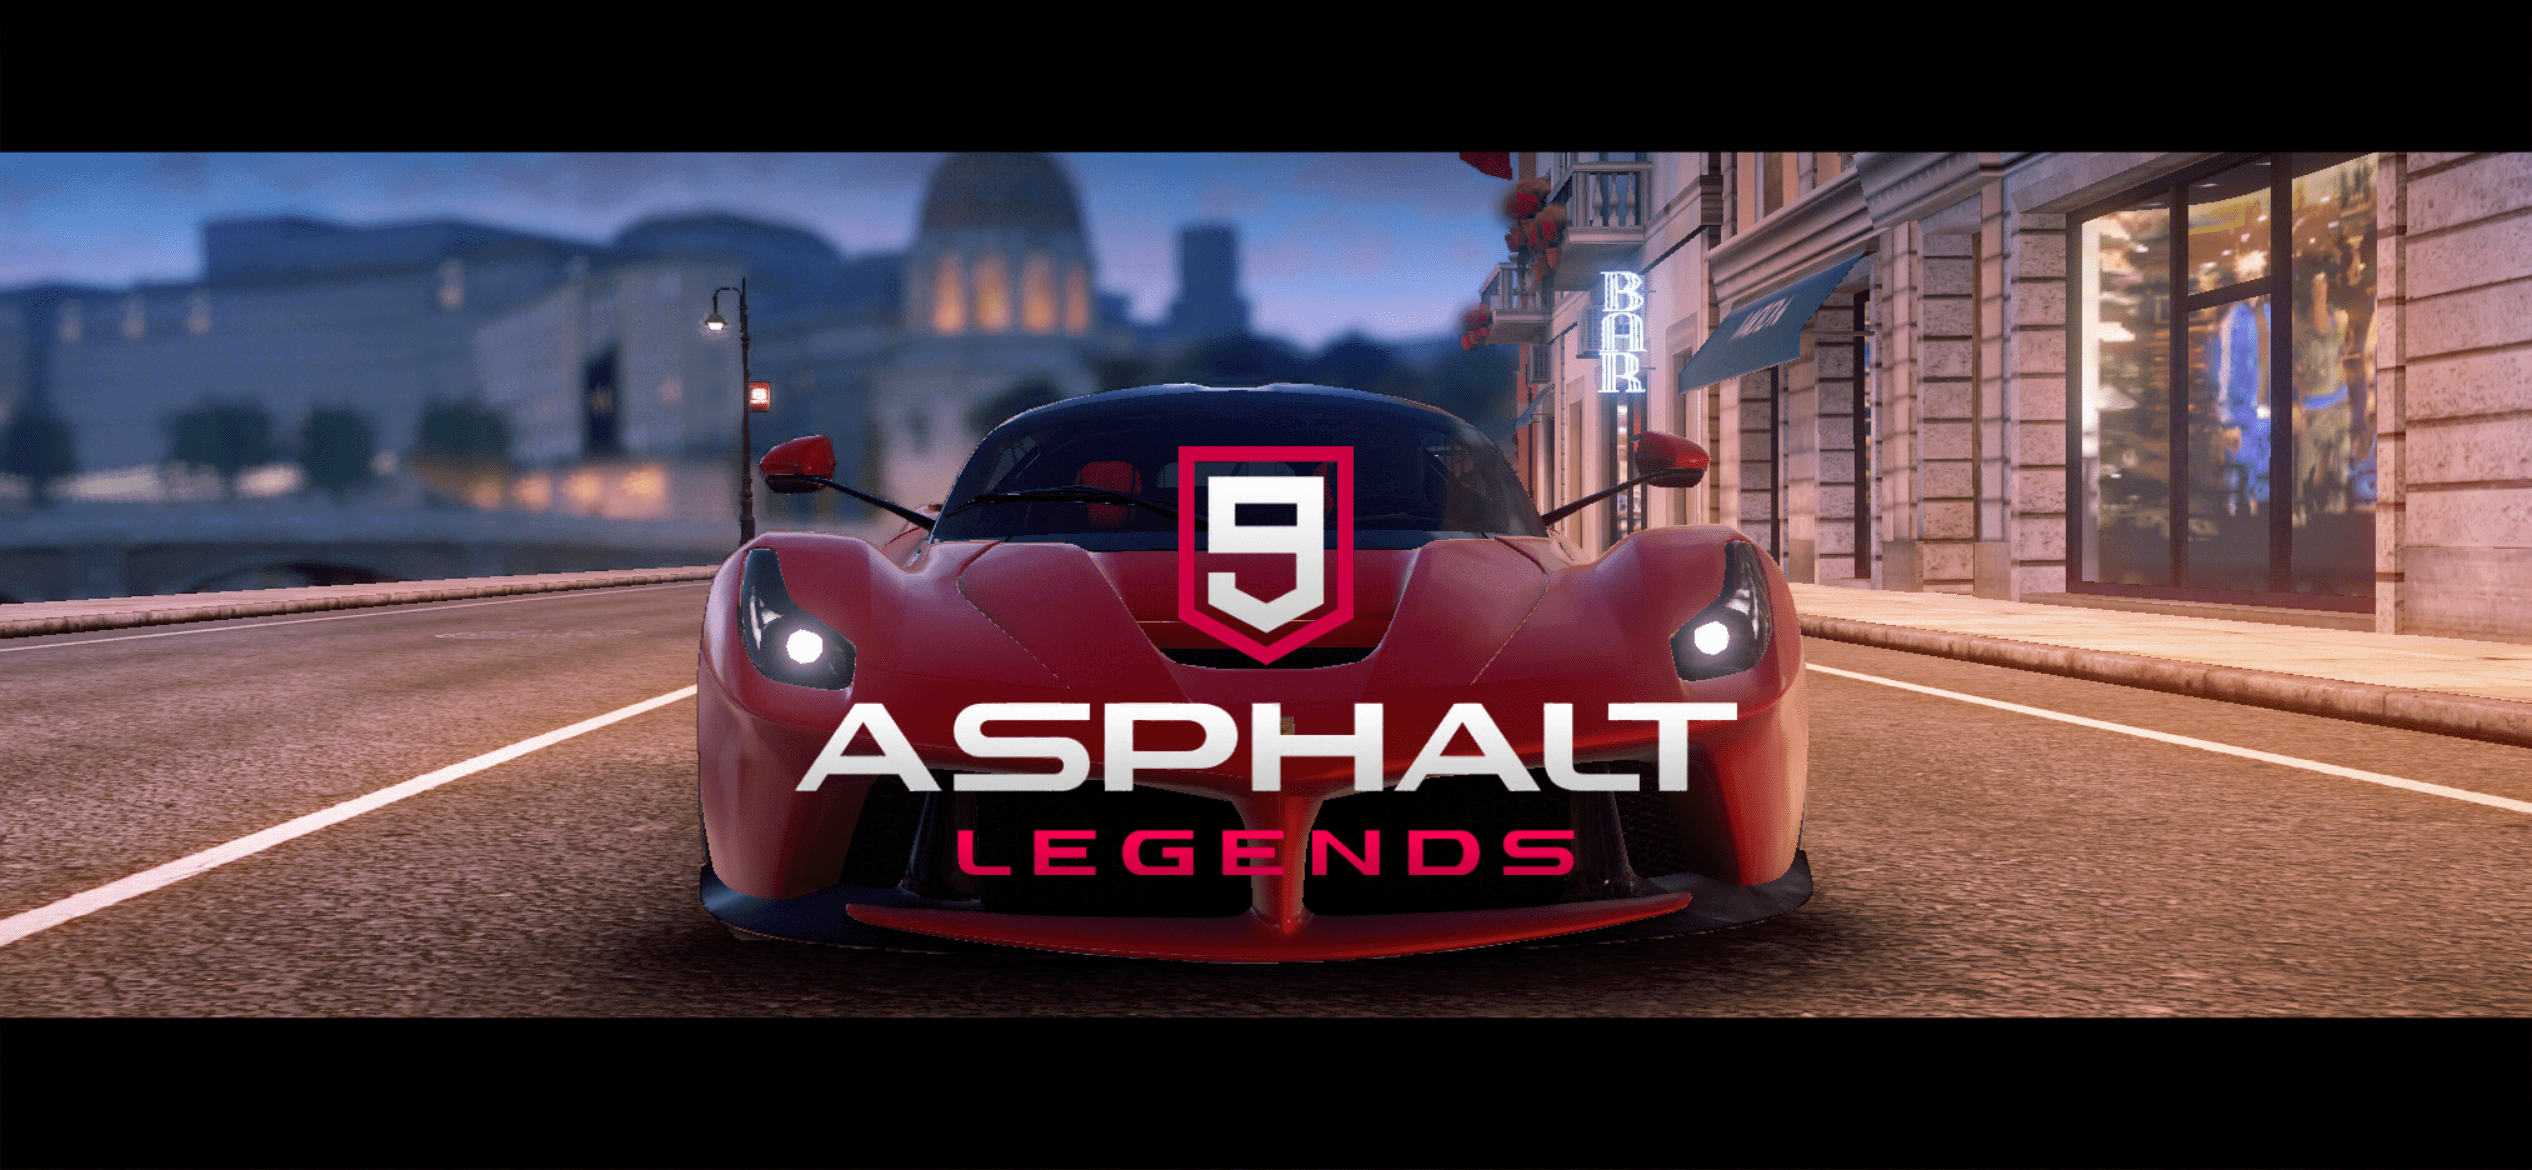 Asphalt 9: Legends Game for Android - Download